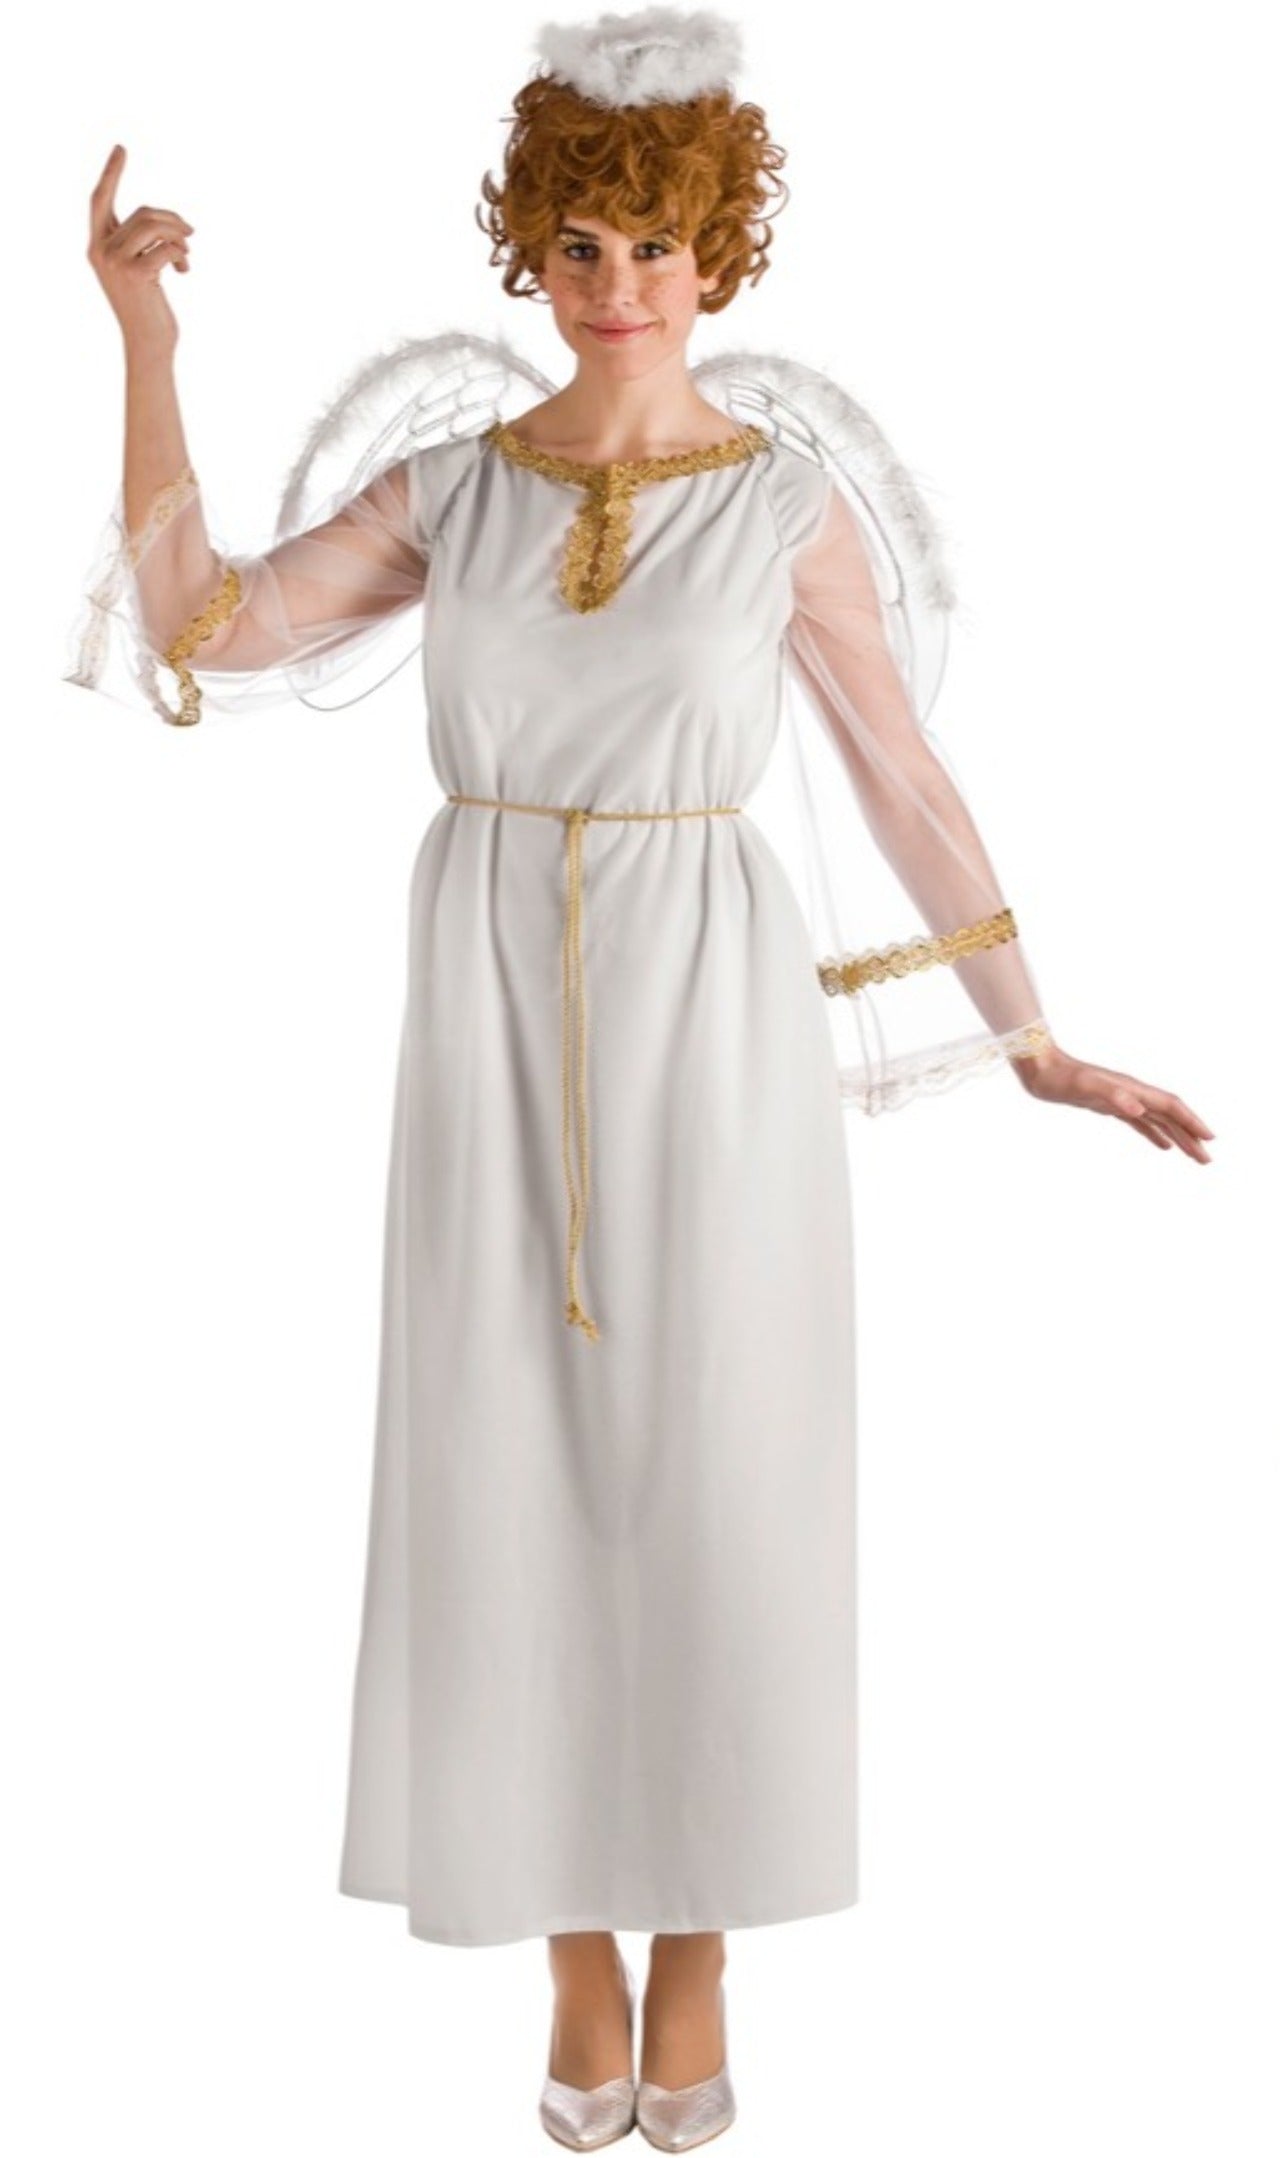 La magia del disfraz: angel-tunica-blanca-brillos-blanco